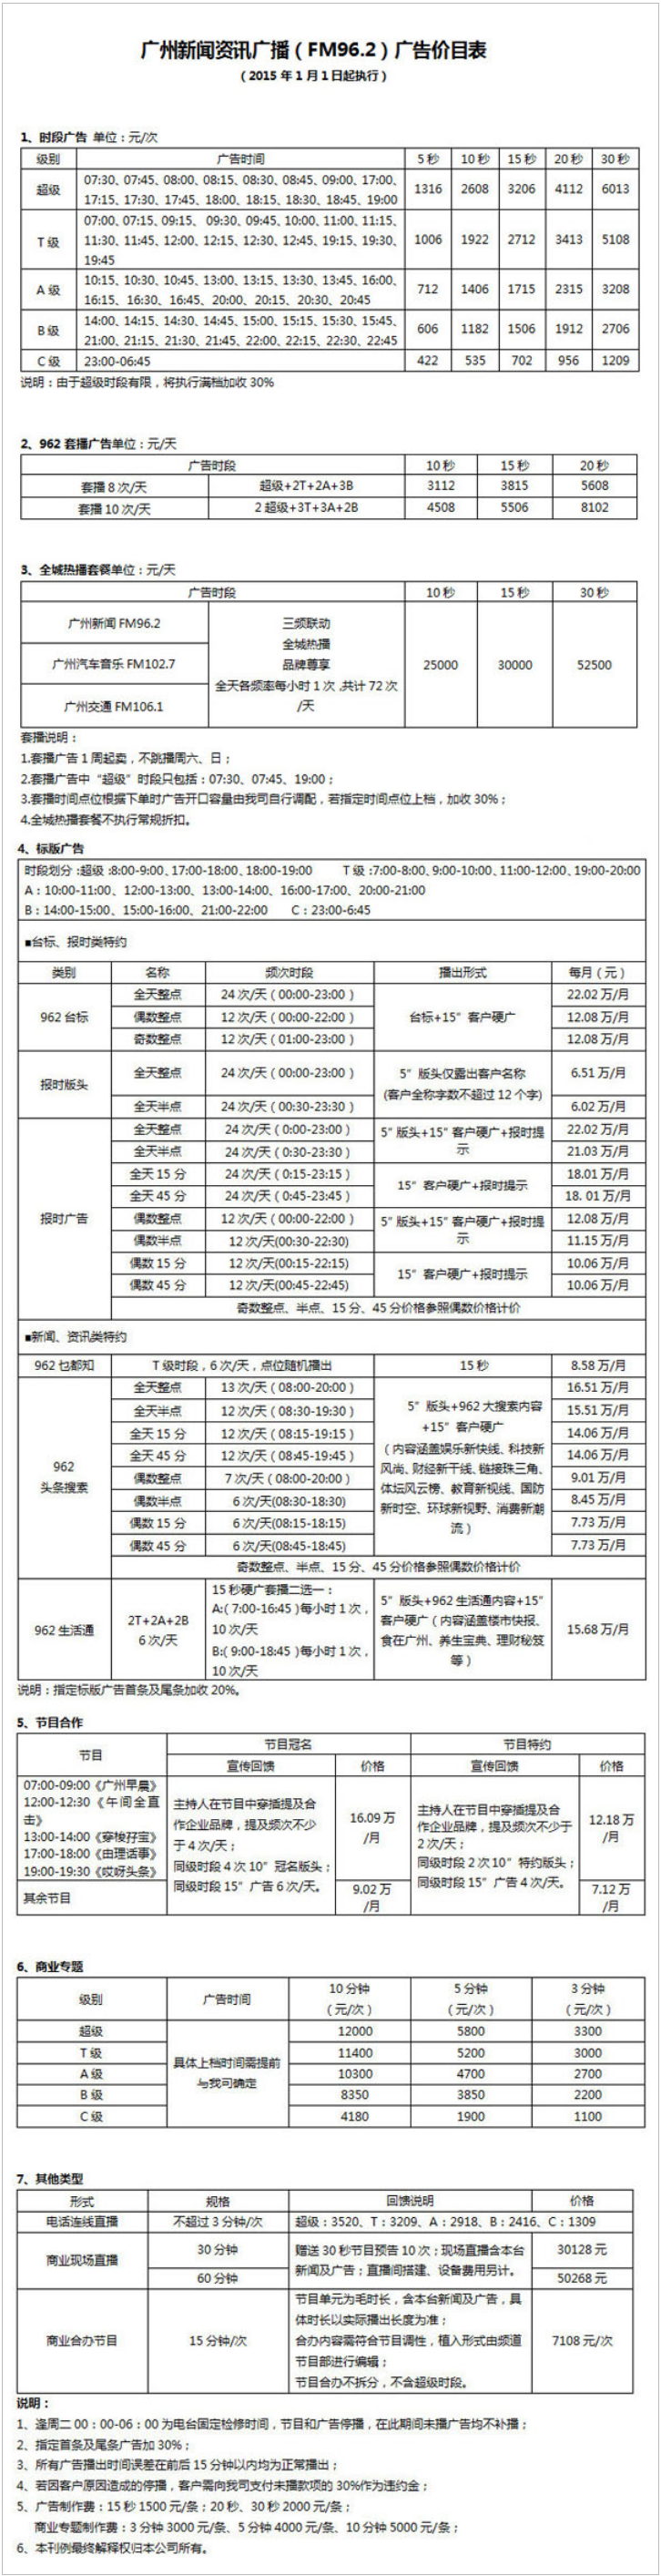 2015广州人民广播电台新闻资讯广播FM96.2广告报价表.png